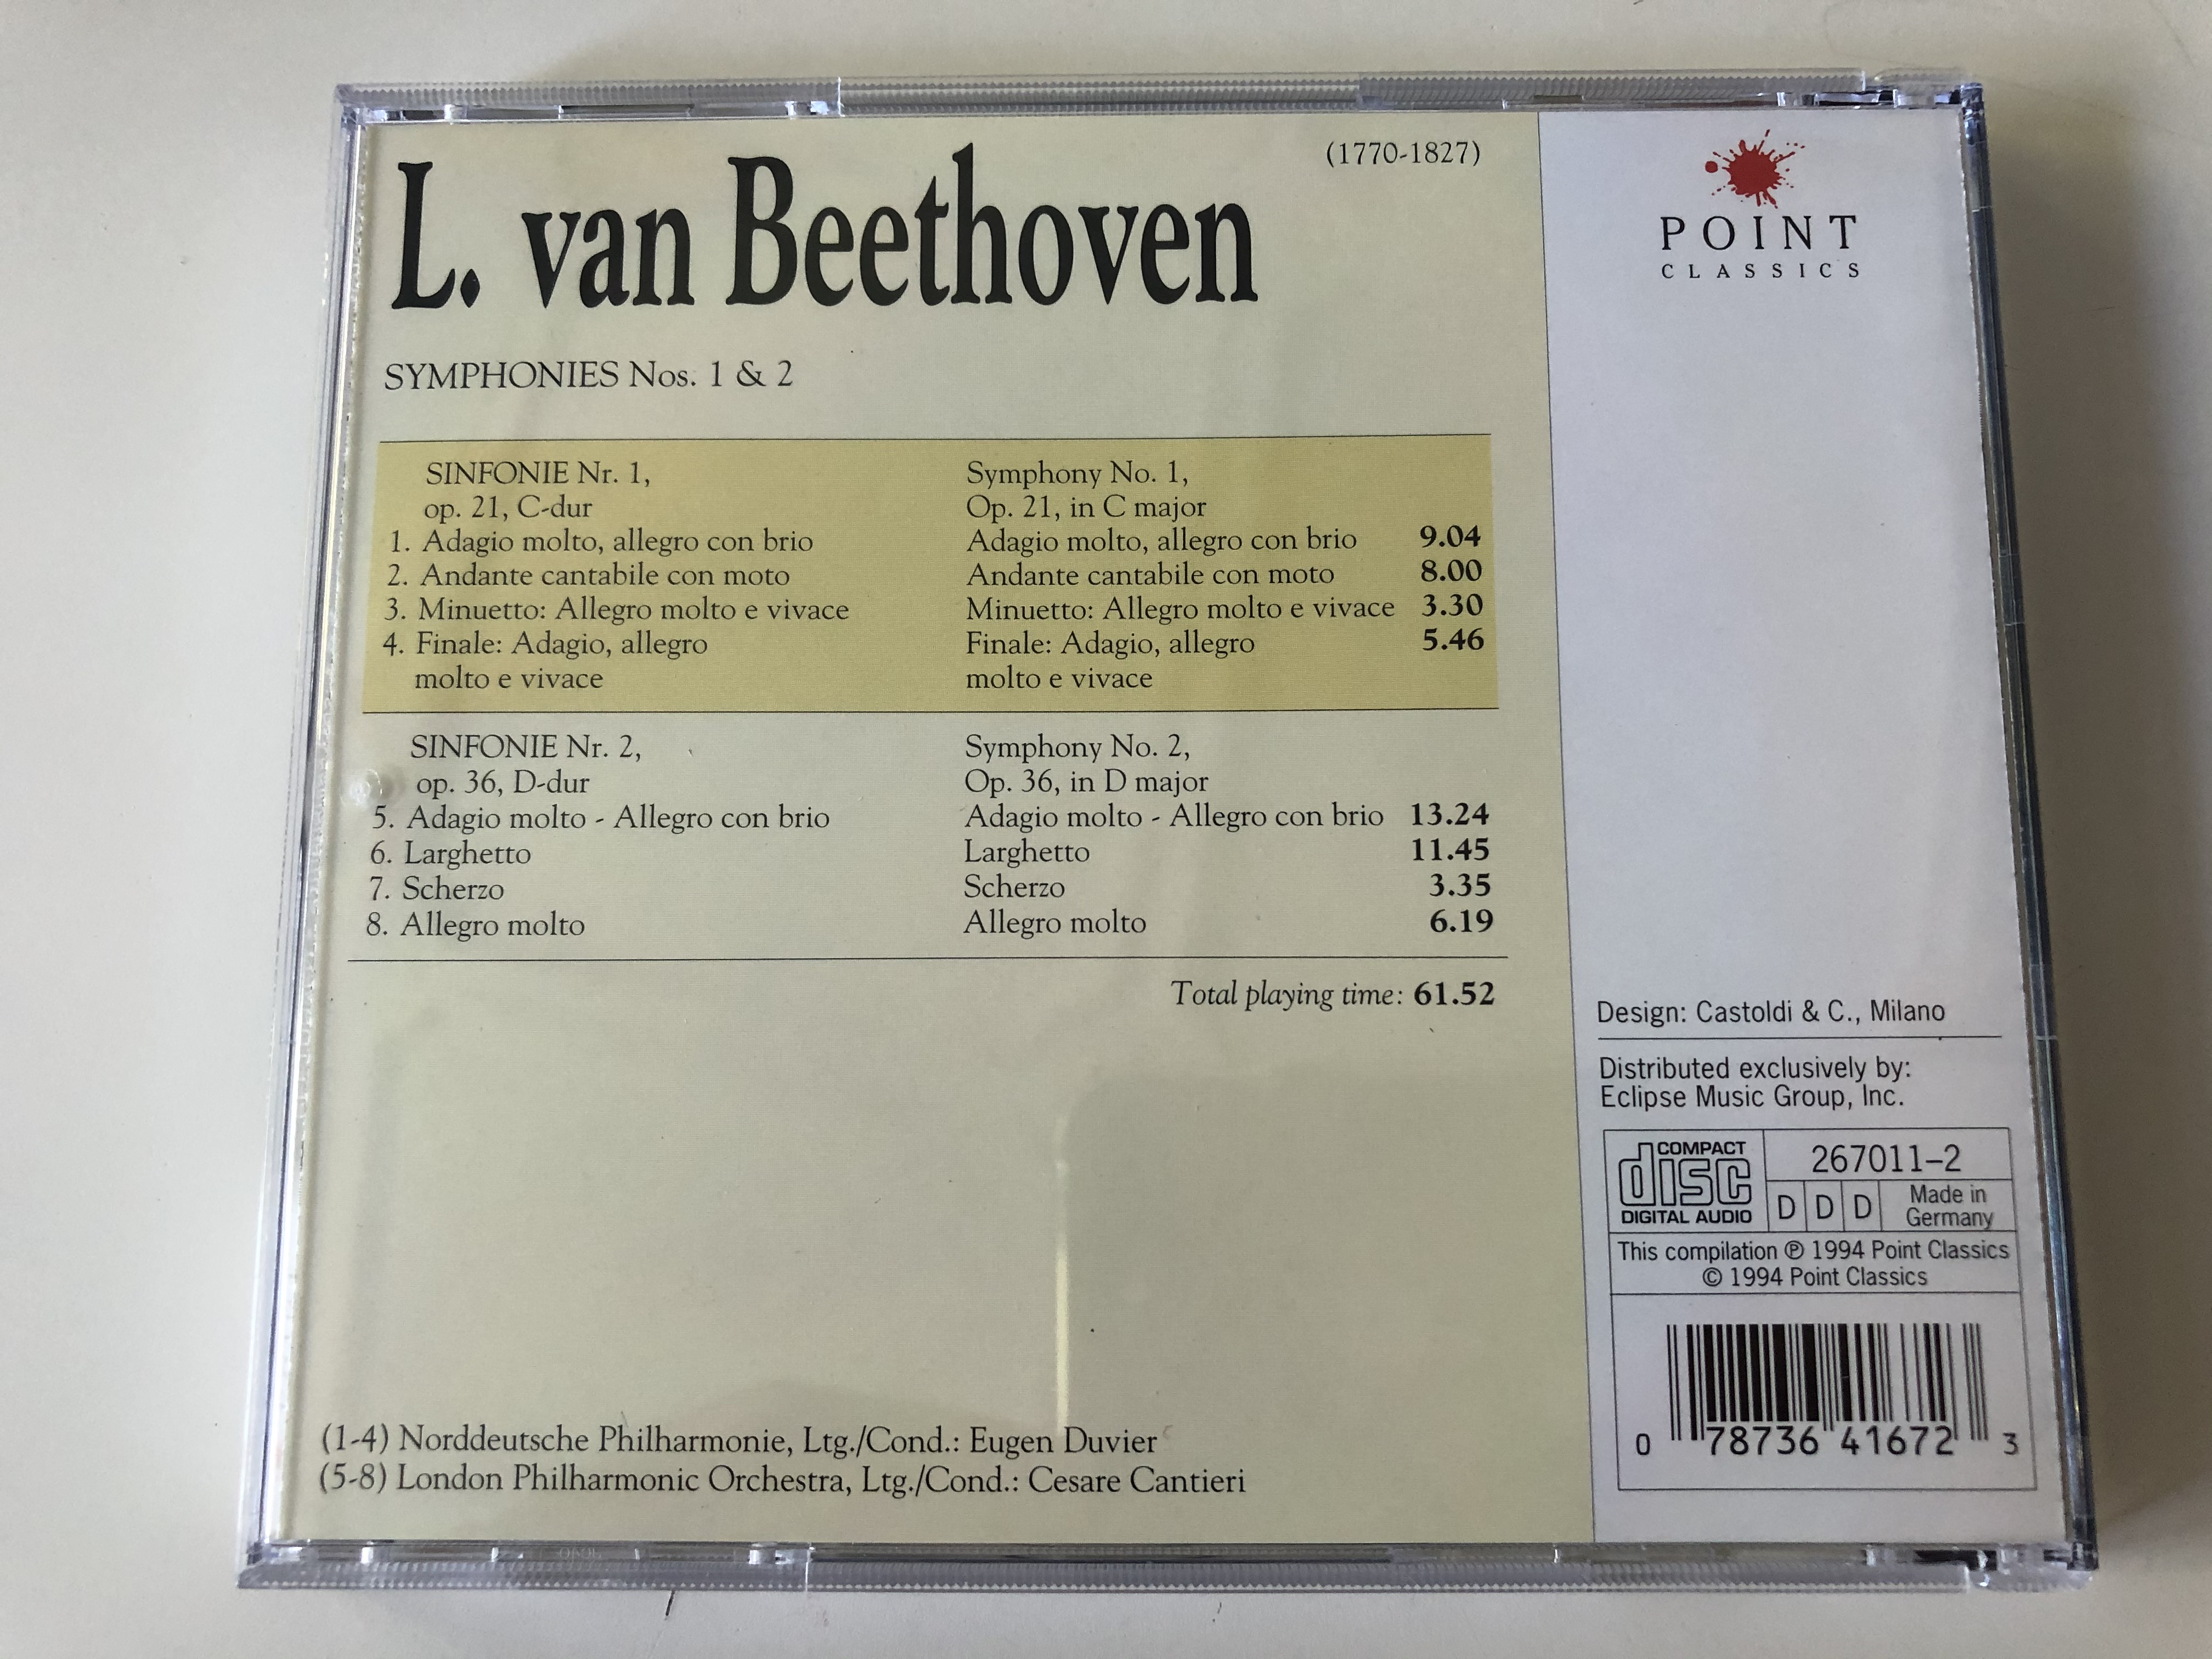 beethoven-symphonies-nos.-1-2-norddeutsche-philharmonie-ltg.-cond.-eugen-duvier-london-philharmonic-orchestra-ltg.-cond.-cesare-cantieri-point-classics-audio-cd-1994-2670112-5-.jpg